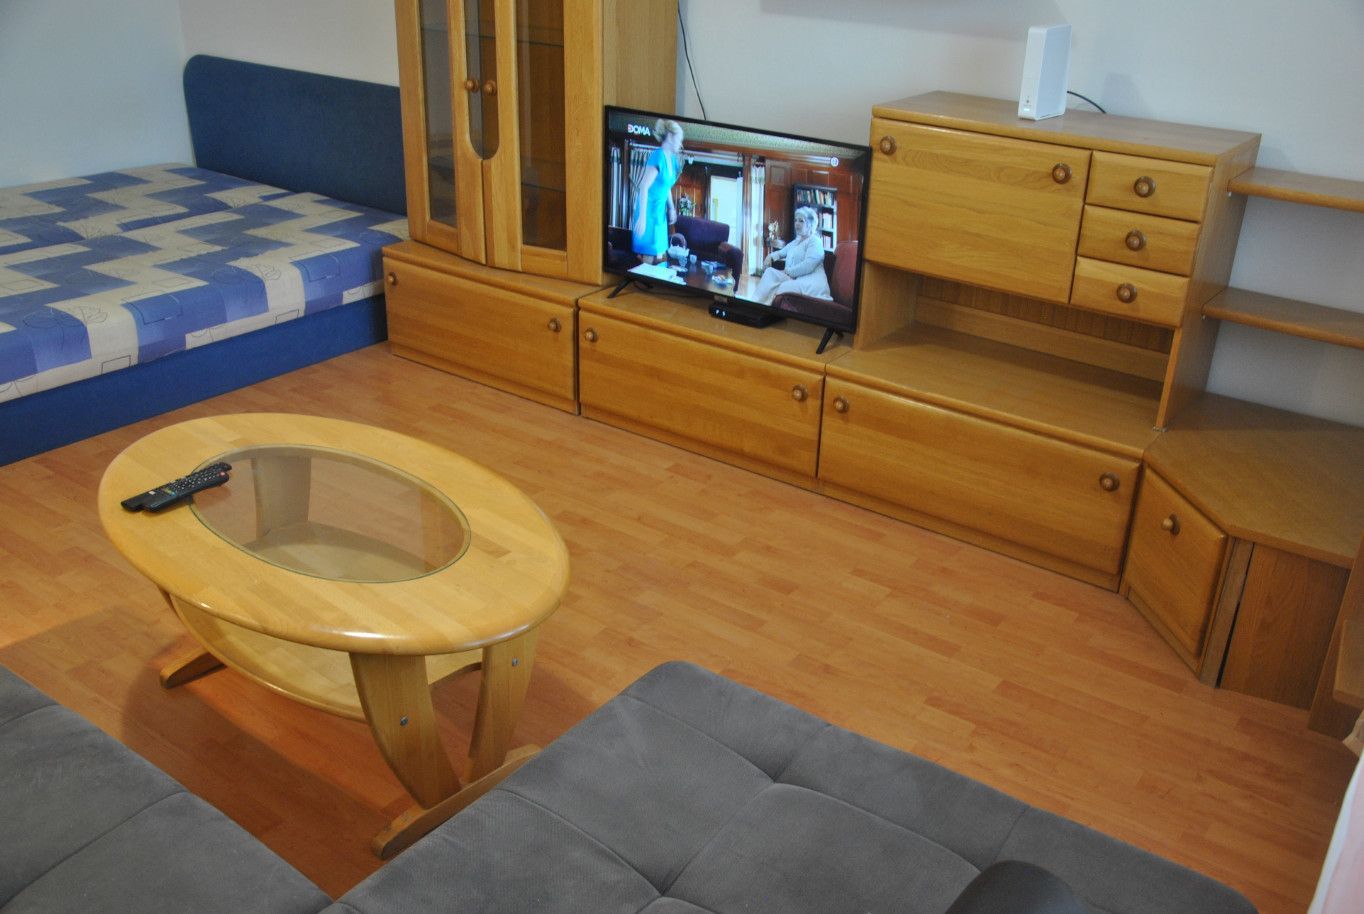 BOND REALITY - Príjemný 1 izbový byt v tichej lokalite na Jadrová - kompletne zariadený